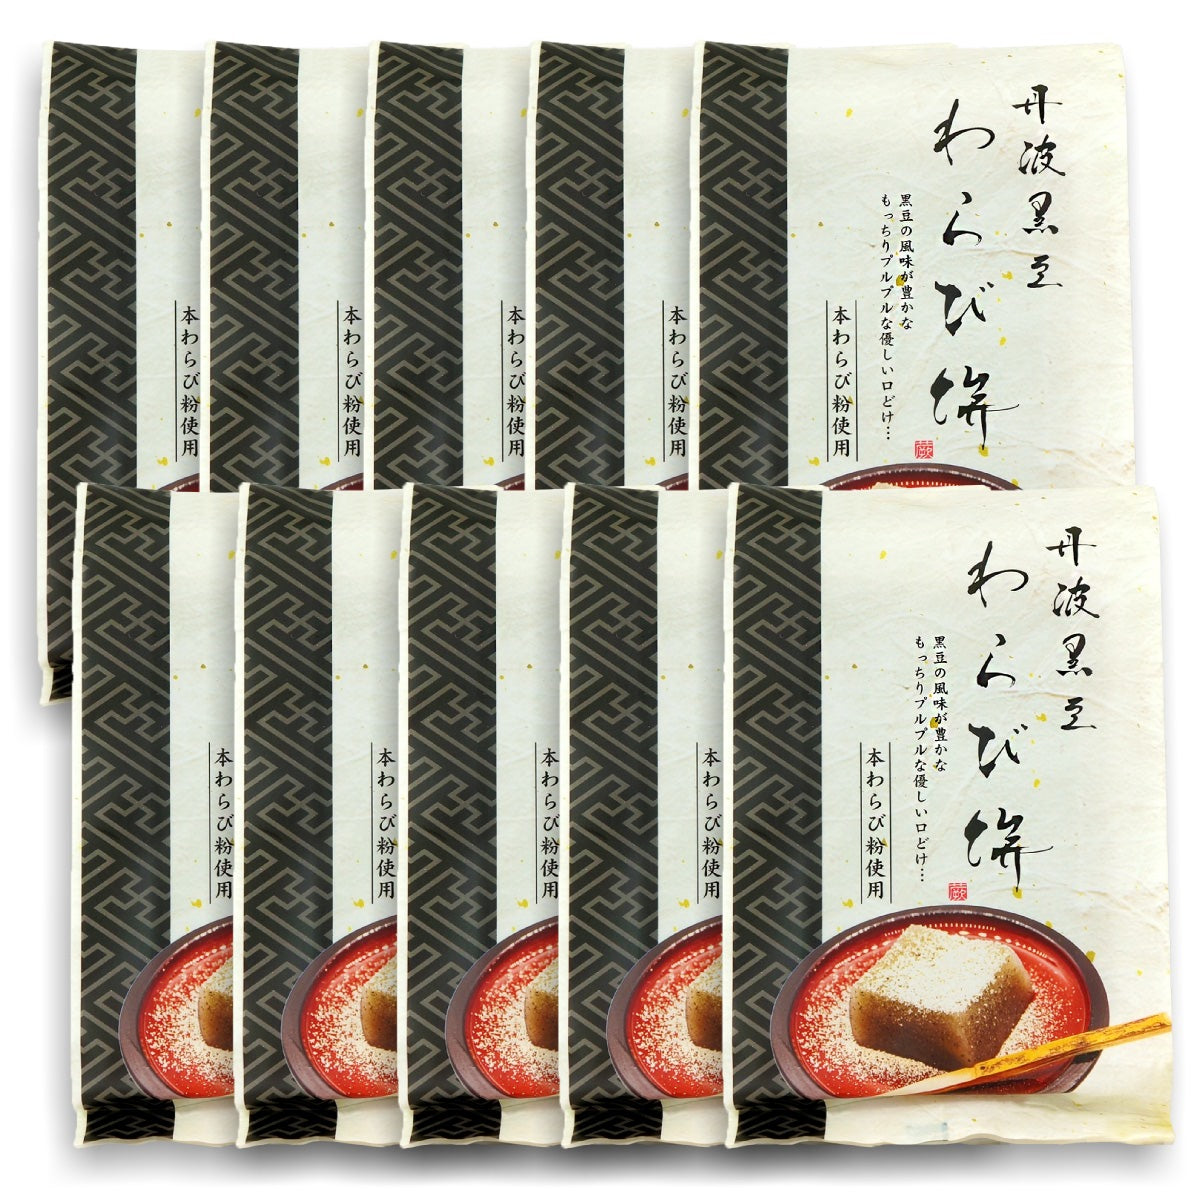 丹波黒豆 わらび餅 本わらび粉使用 230g×10袋 ギフトボックス入り 送料無料